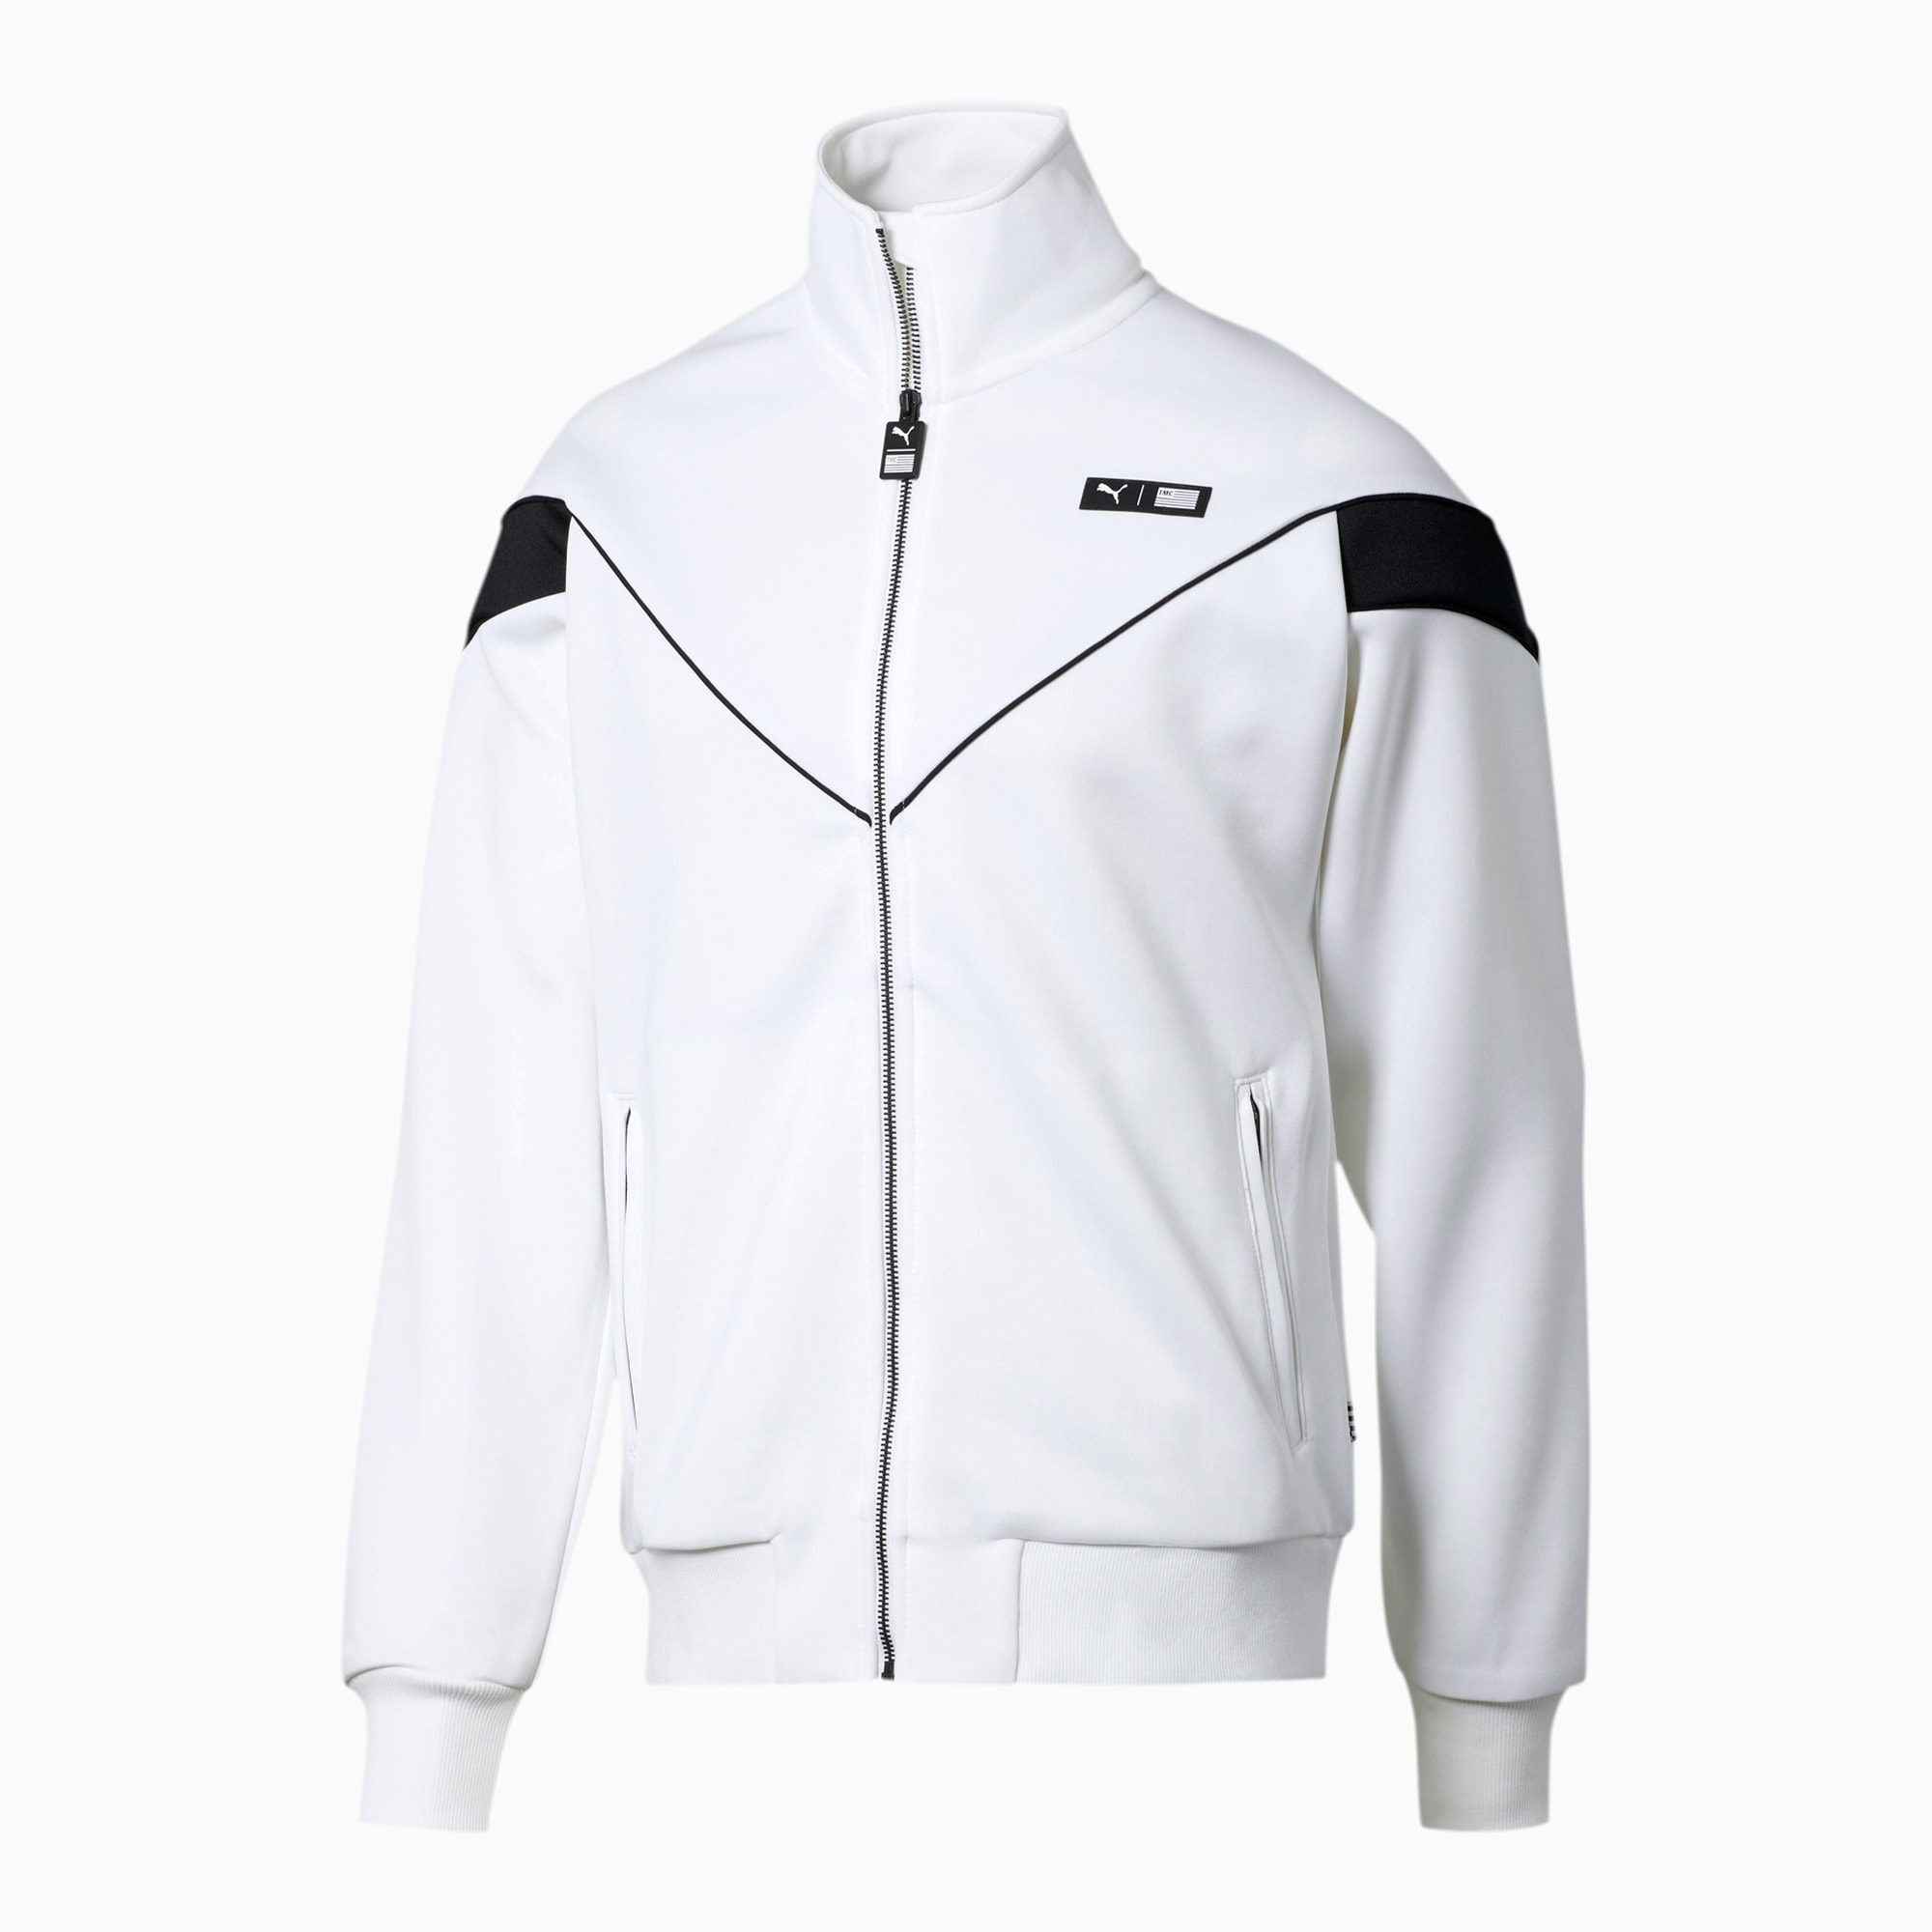 puma white jacket